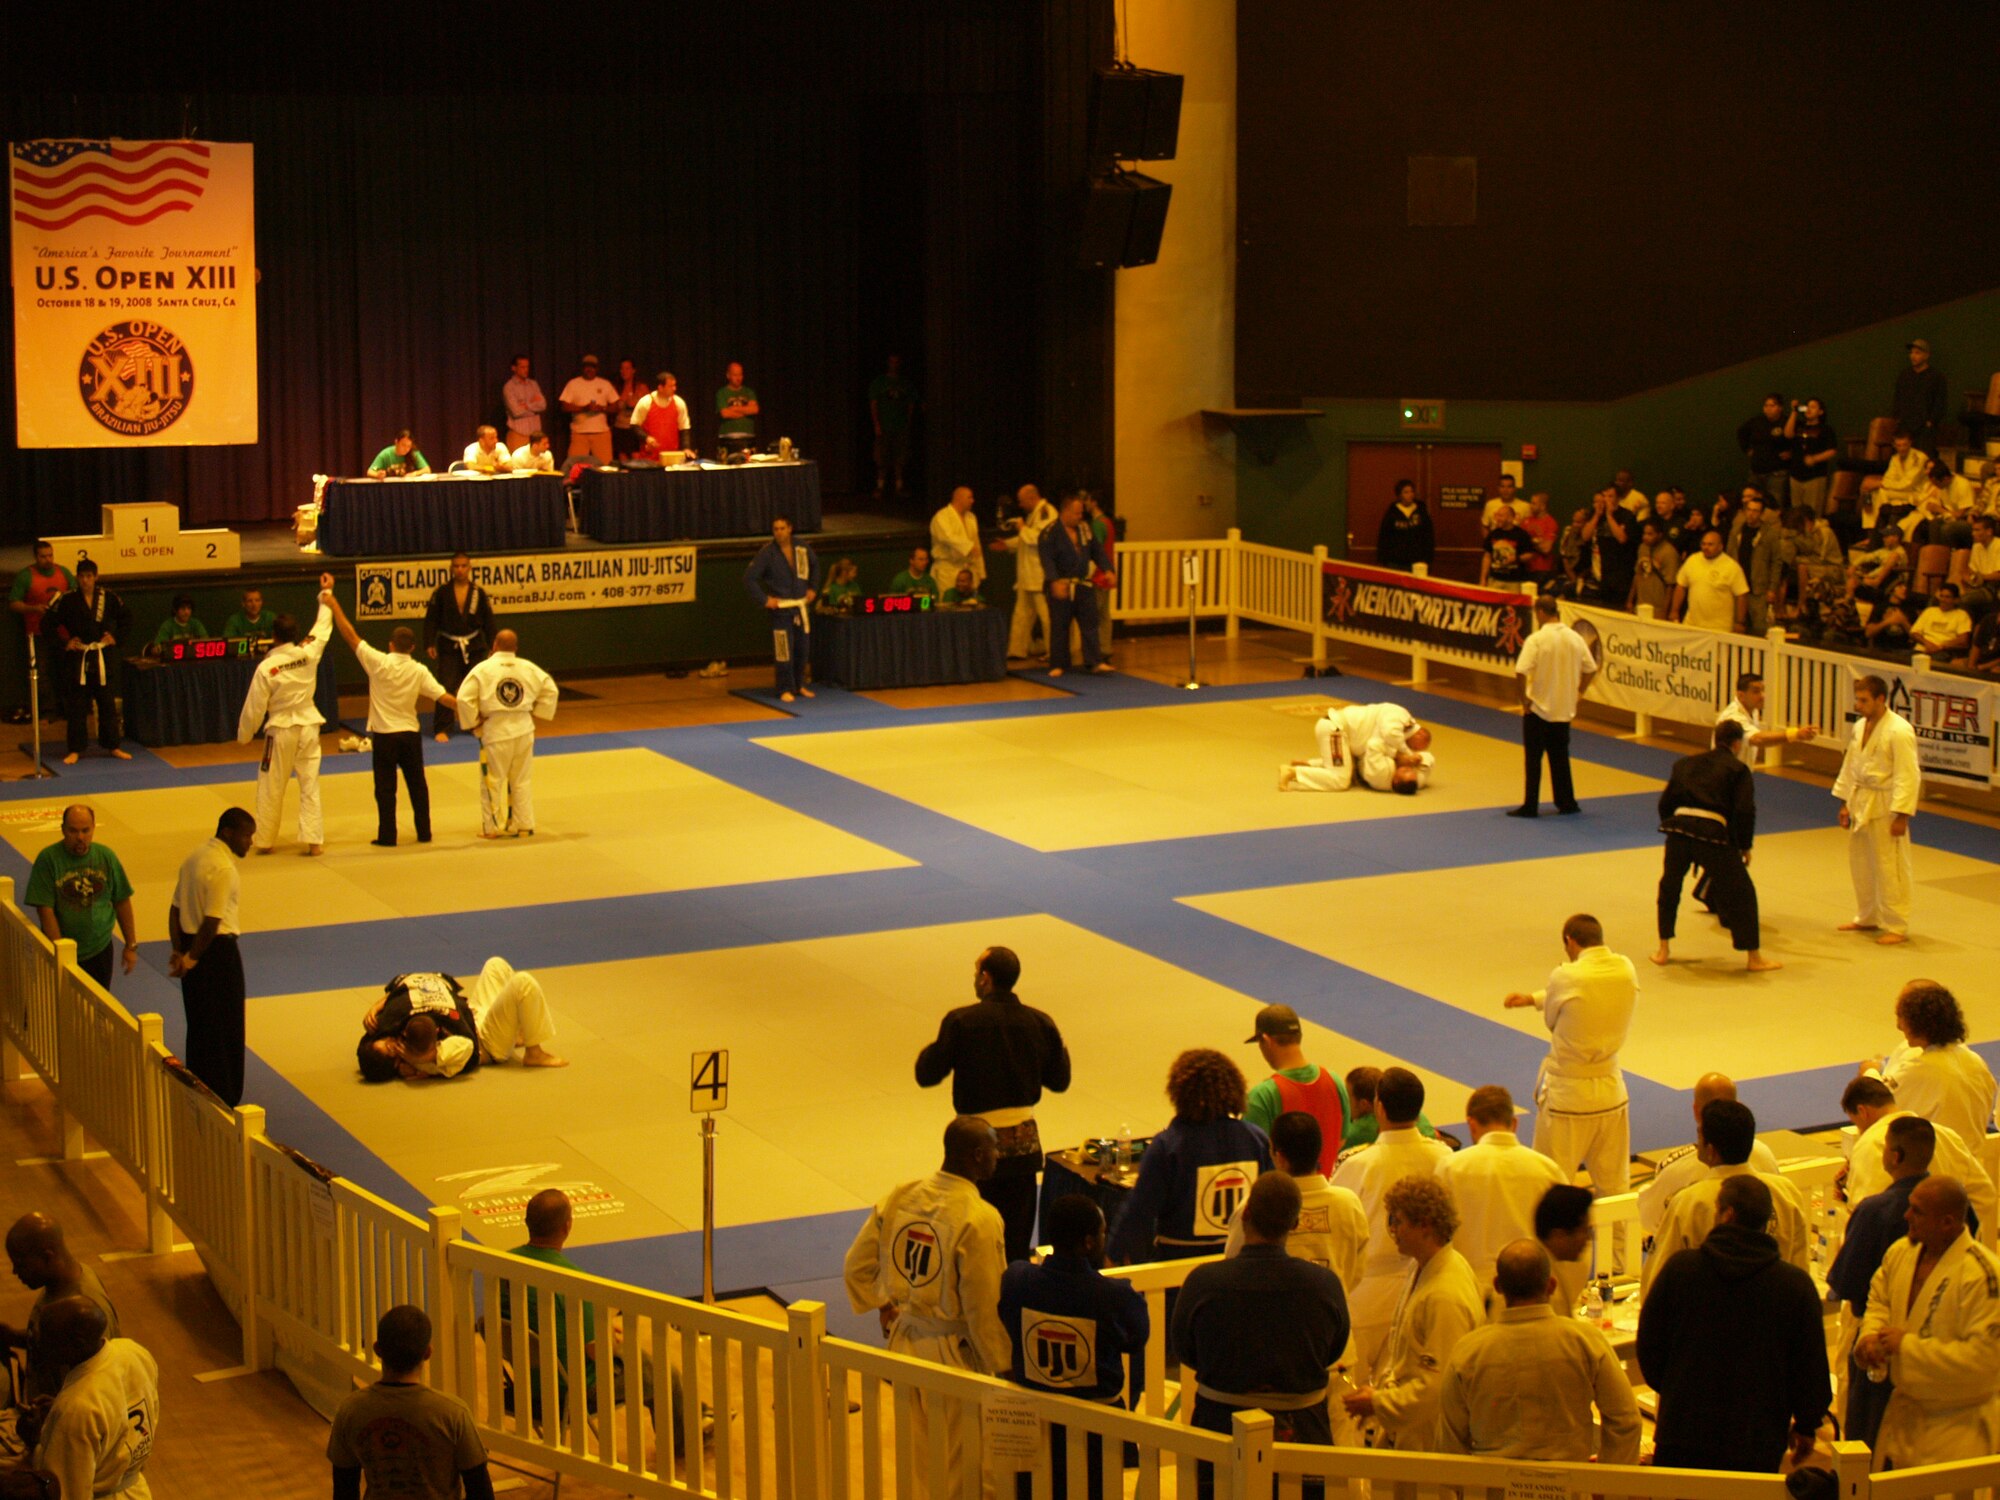 Competitors at the U.S. Open XIII Brazilian Jiu Jitsu “America’s Favorite Tournament” Oct. 18 and 19 in Santa Cruz, Calif.